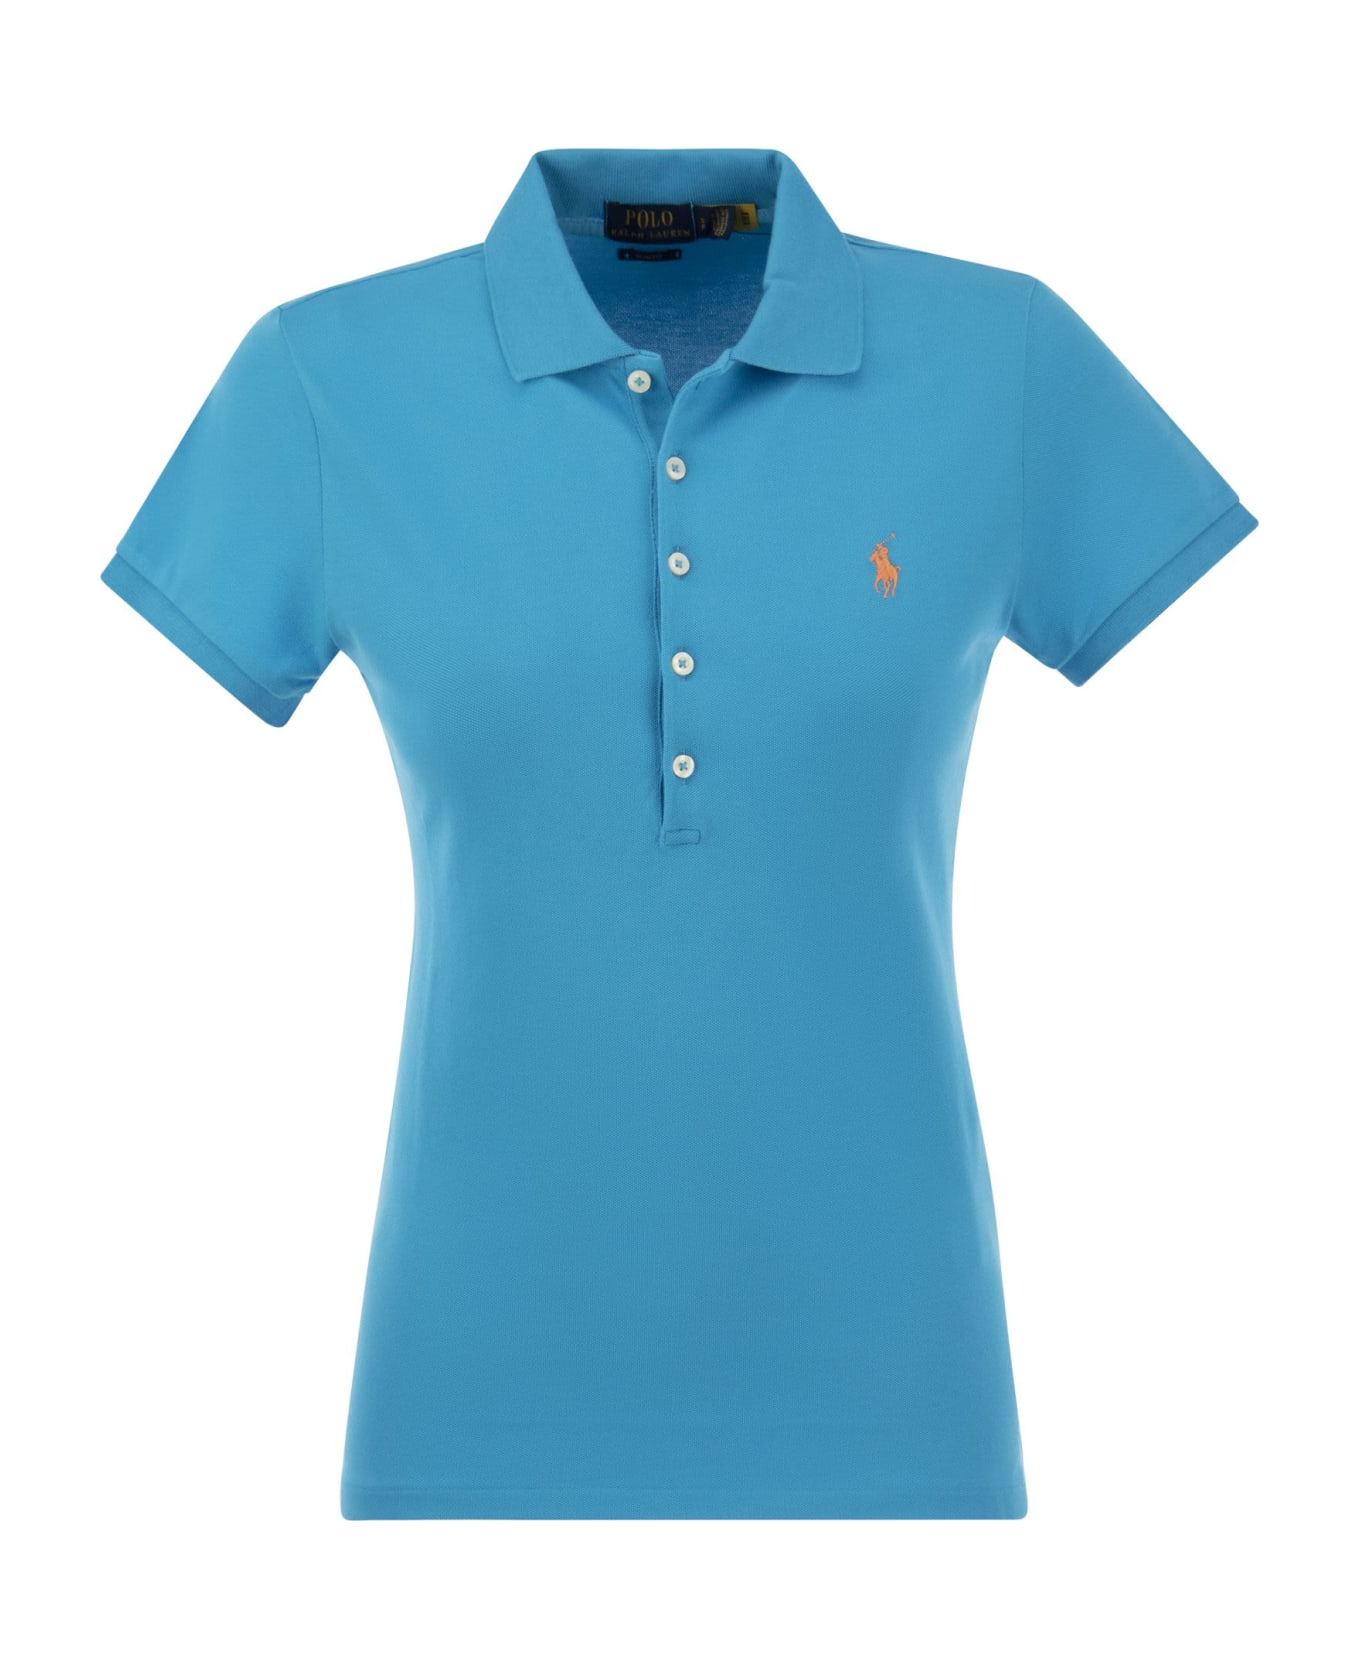 Polo Ralph Lauren Polo Shirt - Light Blue